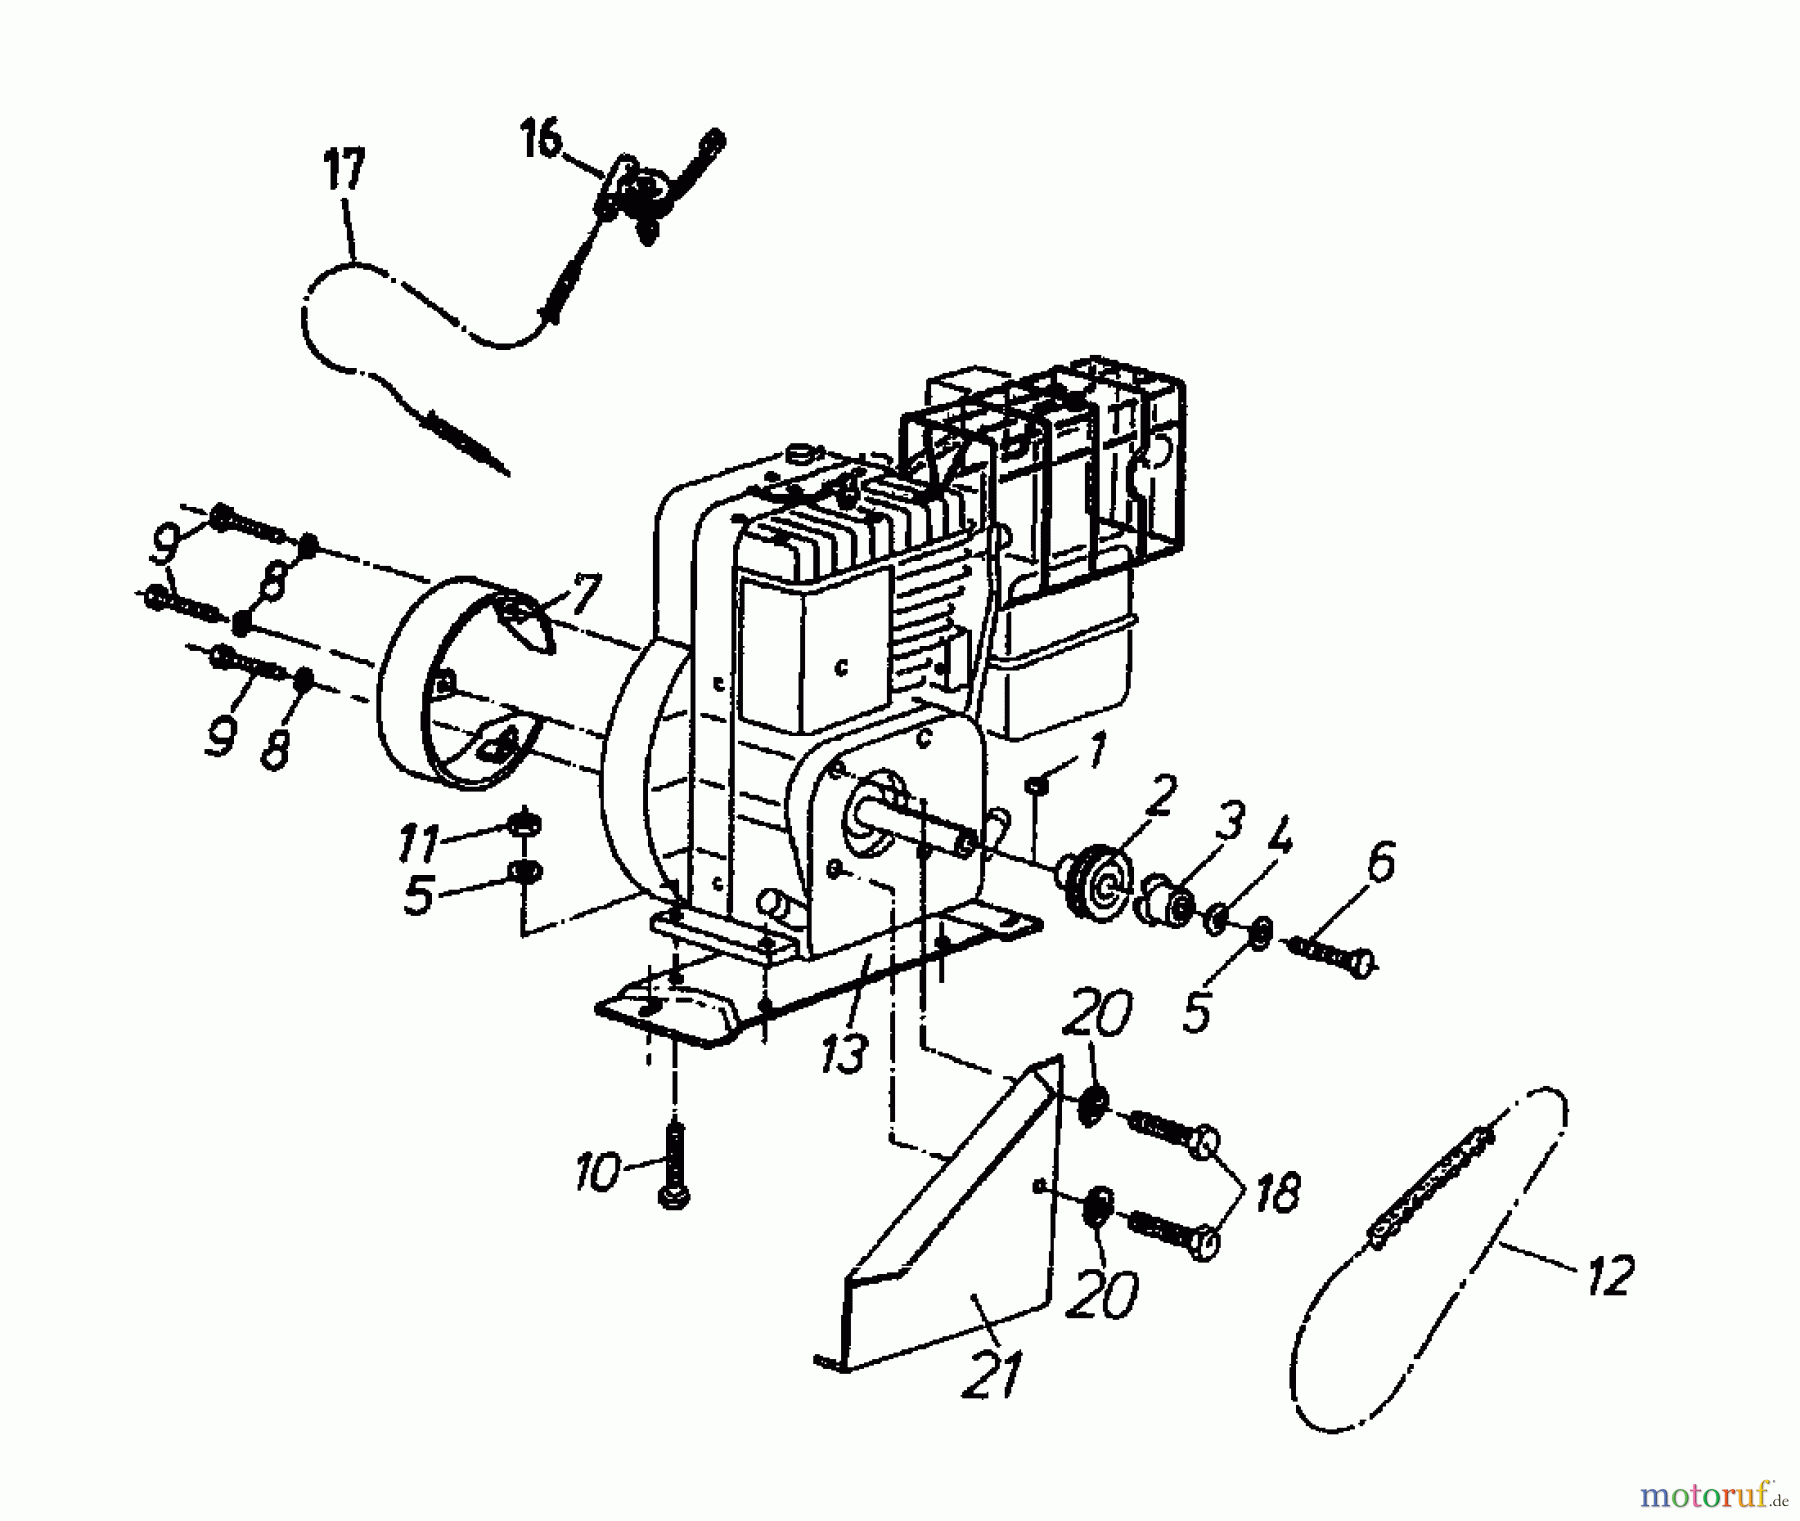  Gutbrod Cutter bar mower BM 91 07517.04  (1995) Belt, Engine, Fuel tank